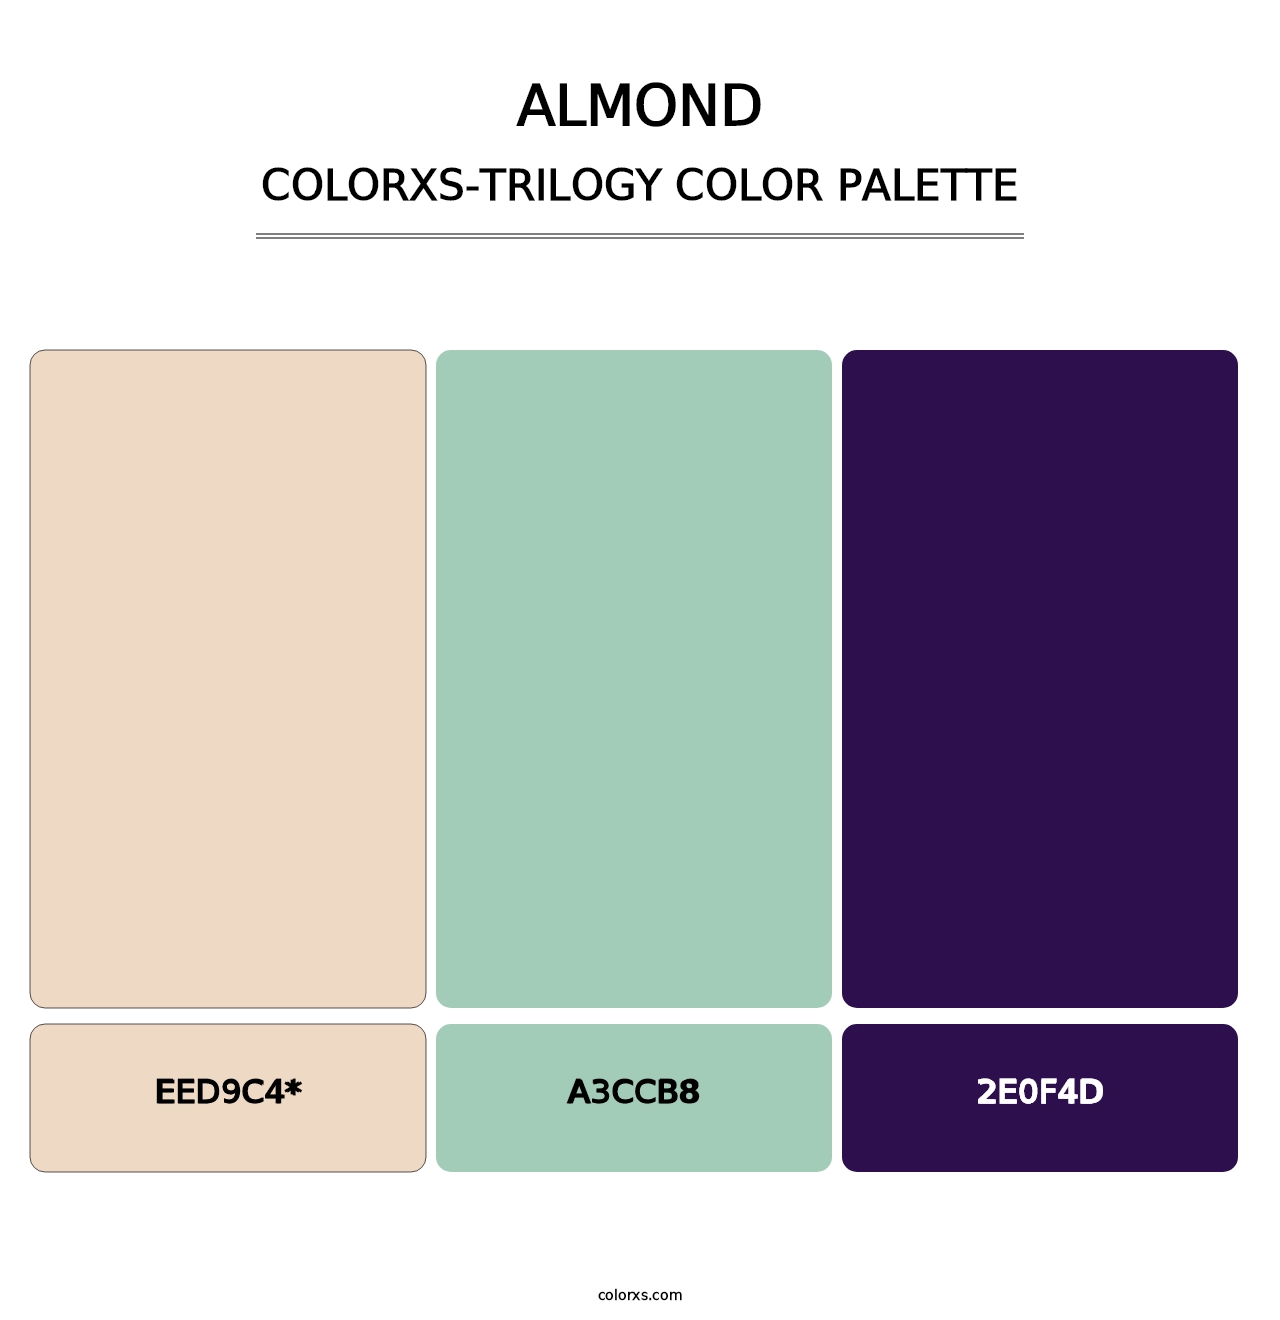 Almond - Colorxs Trilogy Palette